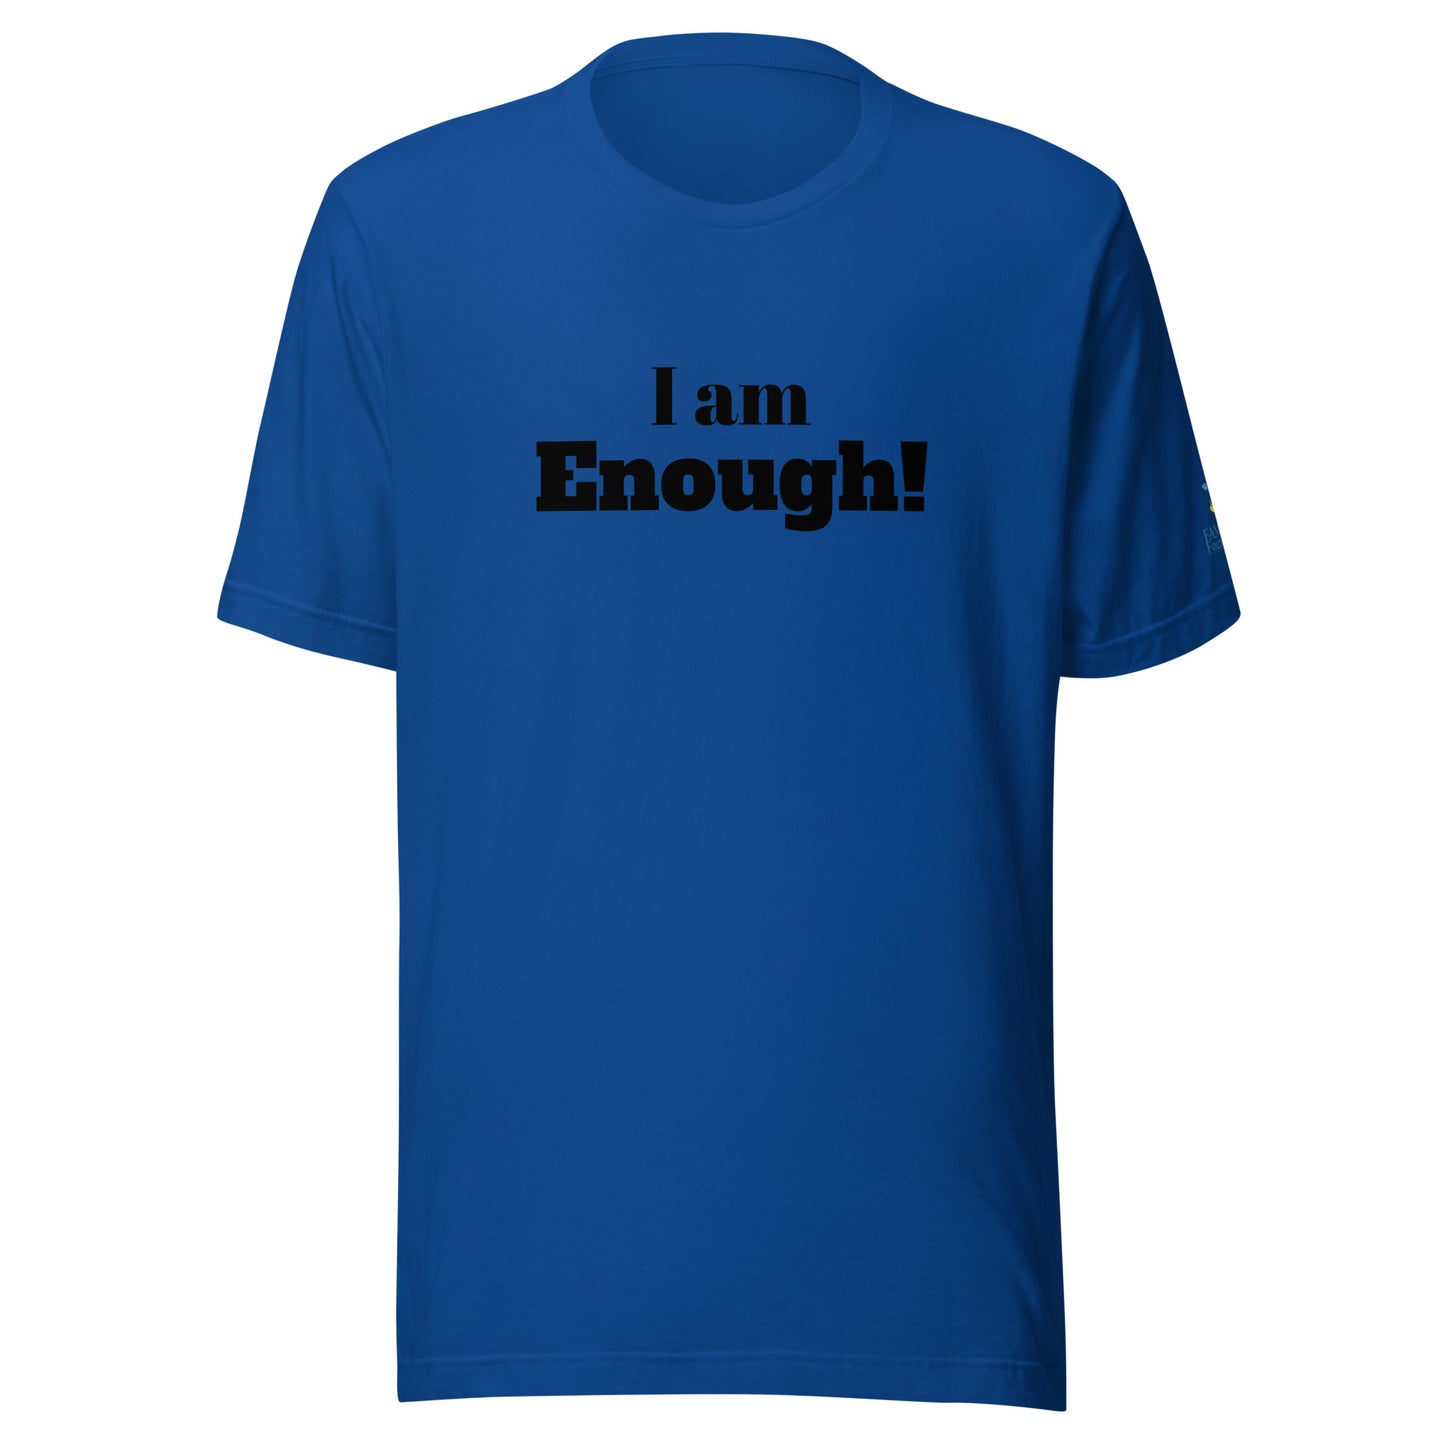 I am Enough! Unisex t-shirt